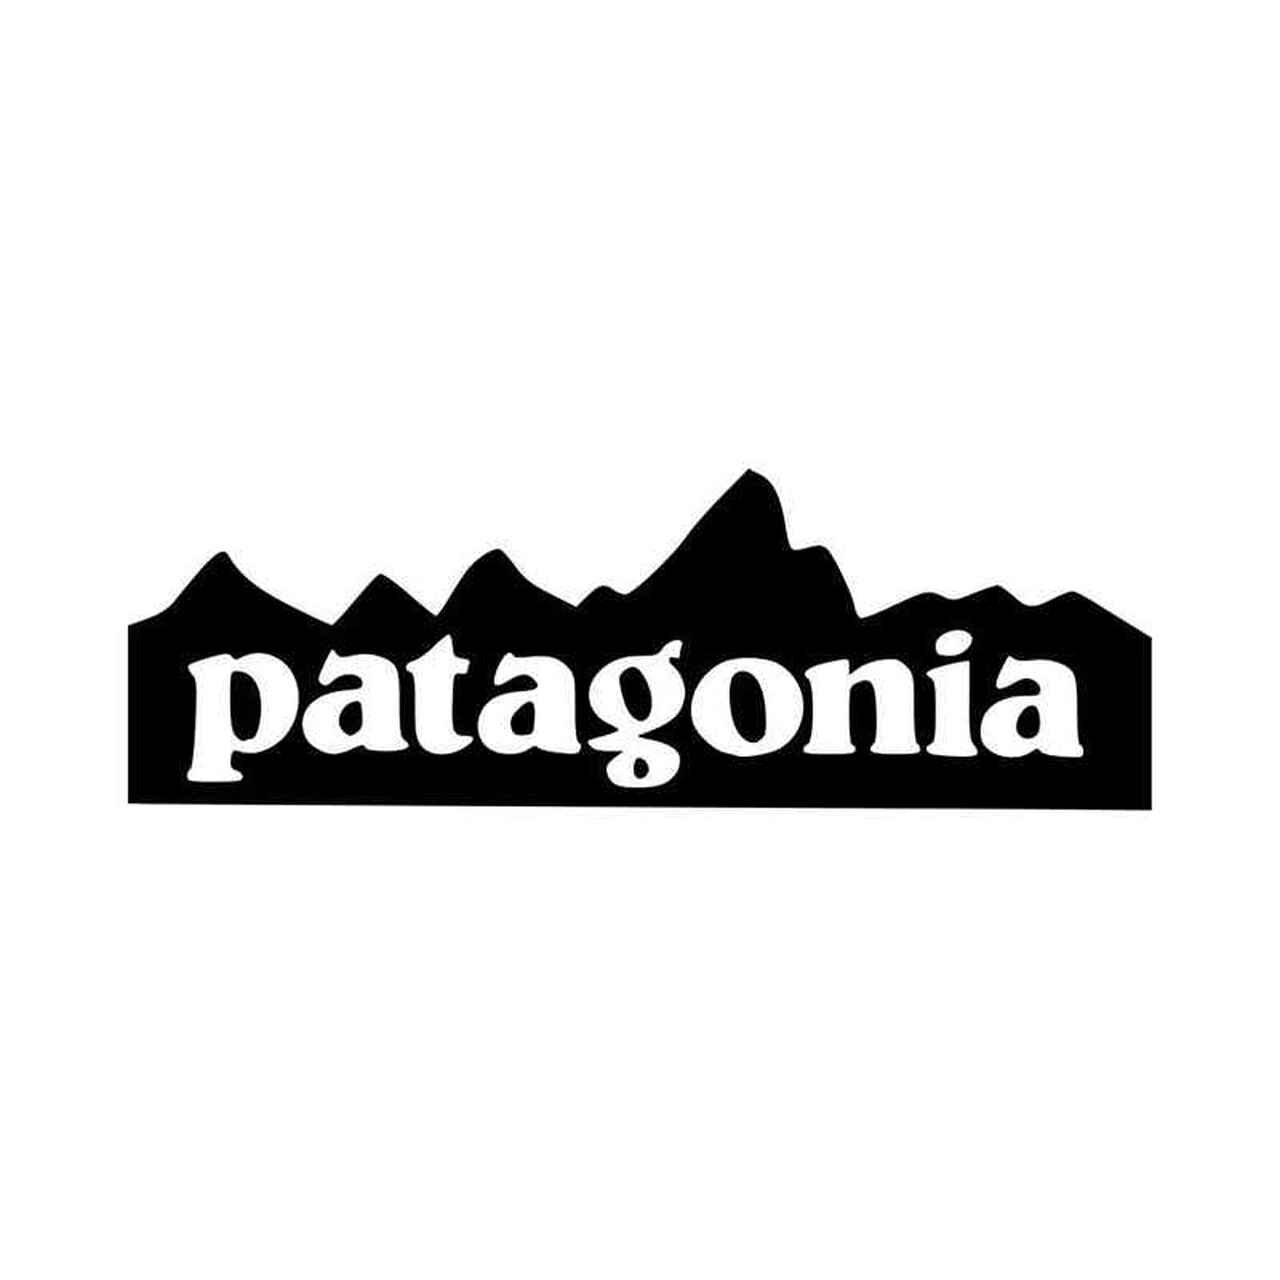 Patagonia-Mountain-Logo-Vinyl-Decal-Sticker__52710.1507851335.jpg